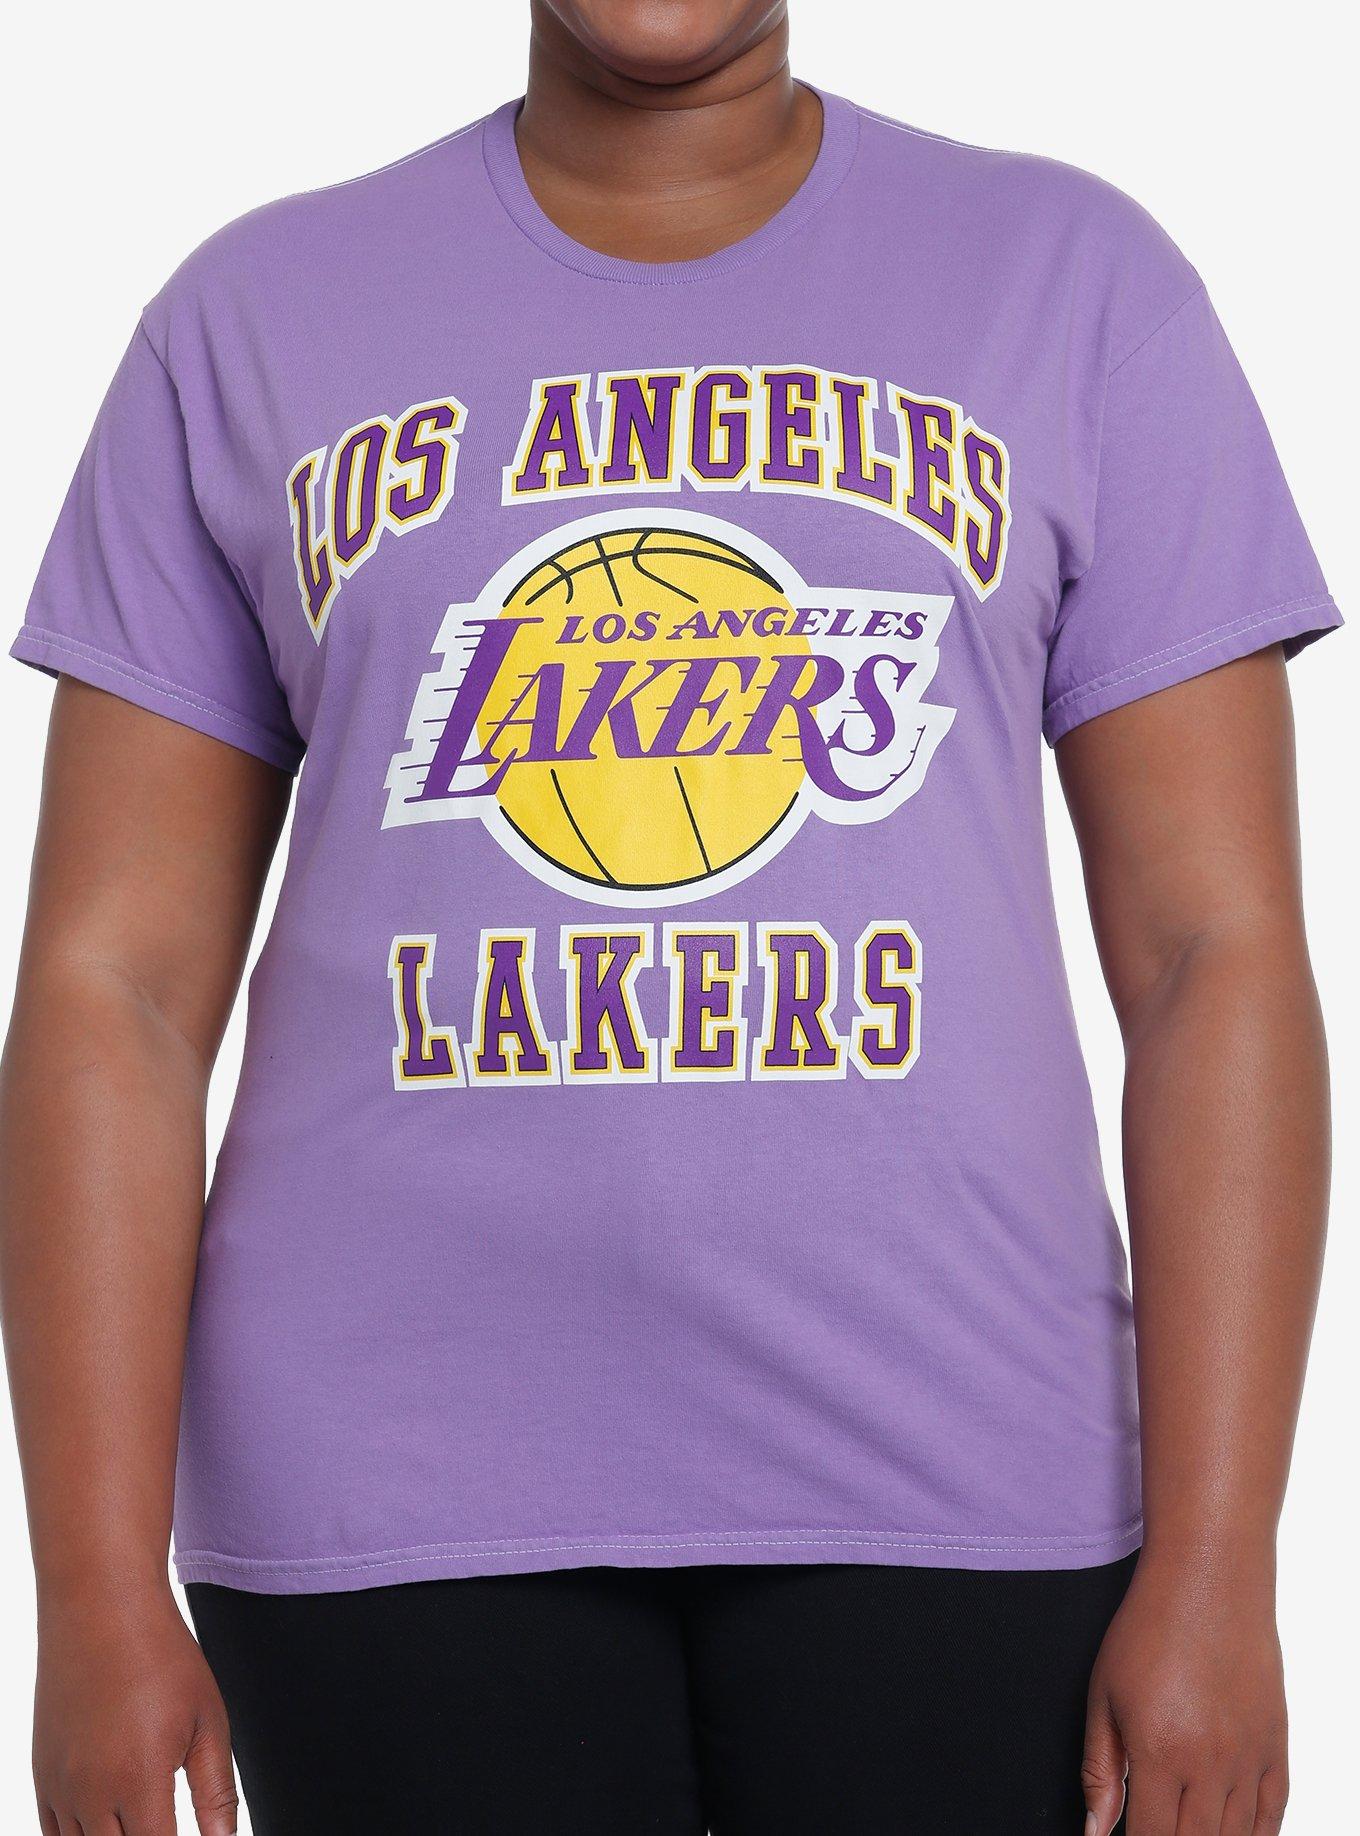 NBA Los Angeles Lakers Licensed Sweatshirt